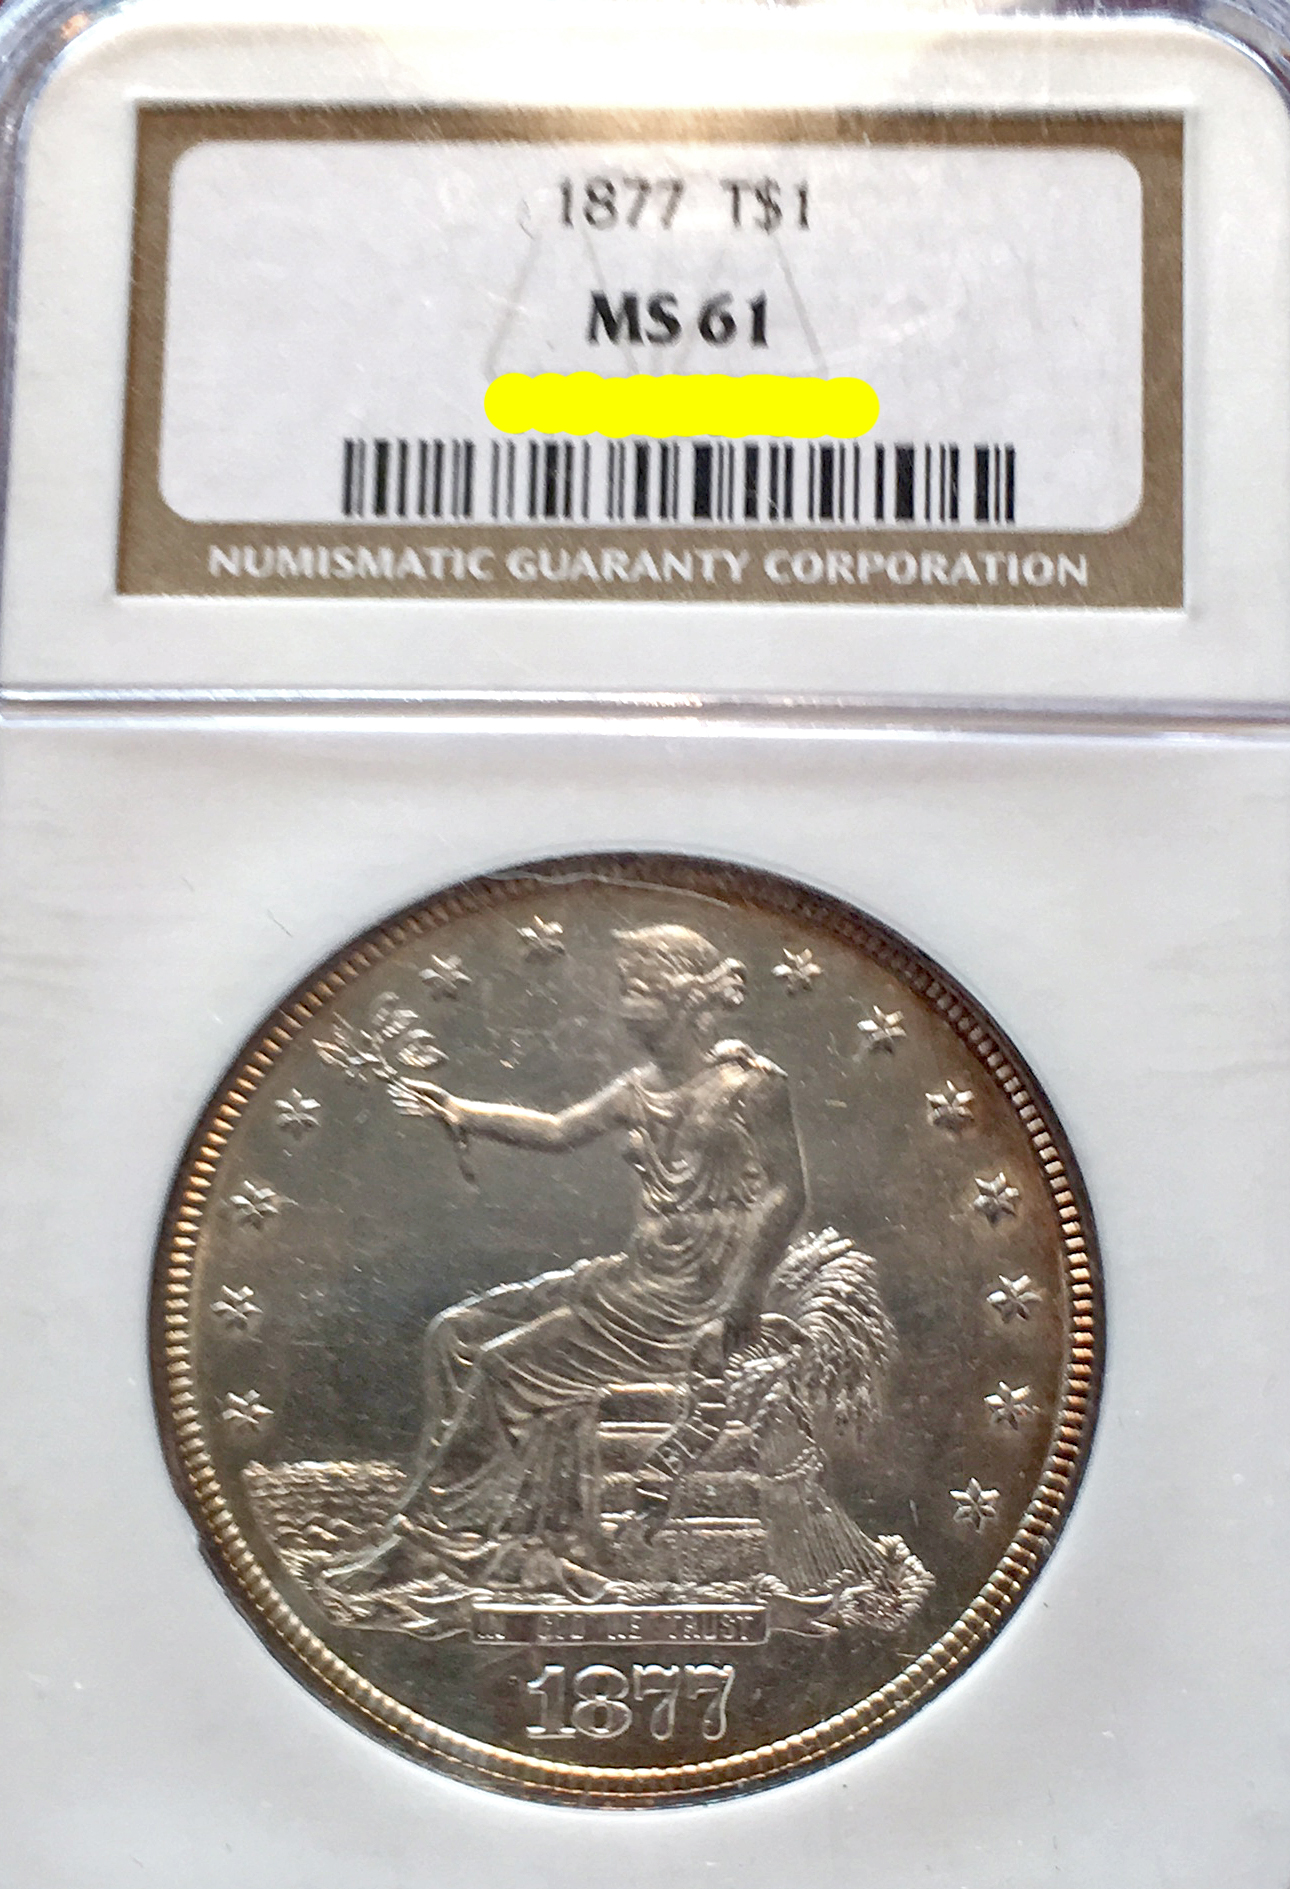 December 2016 Coin Show 1877 Trade Dollar MS-61 NGC